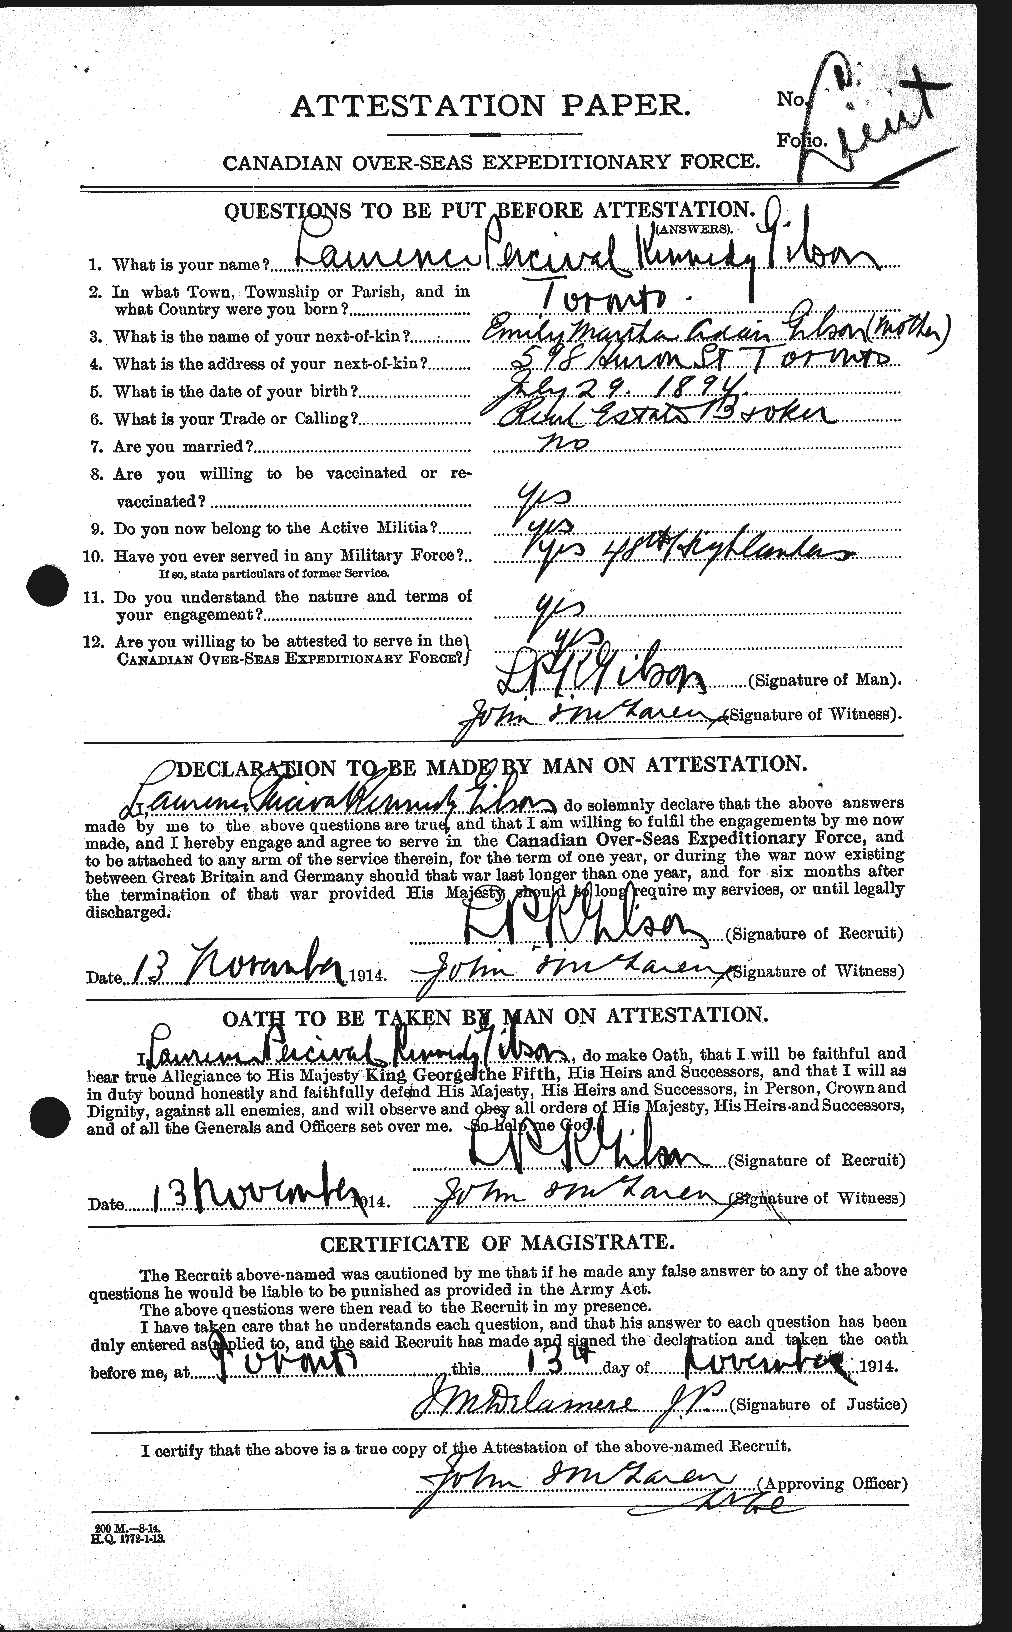 Dossiers du Personnel de la Première Guerre mondiale - CEC 350579a